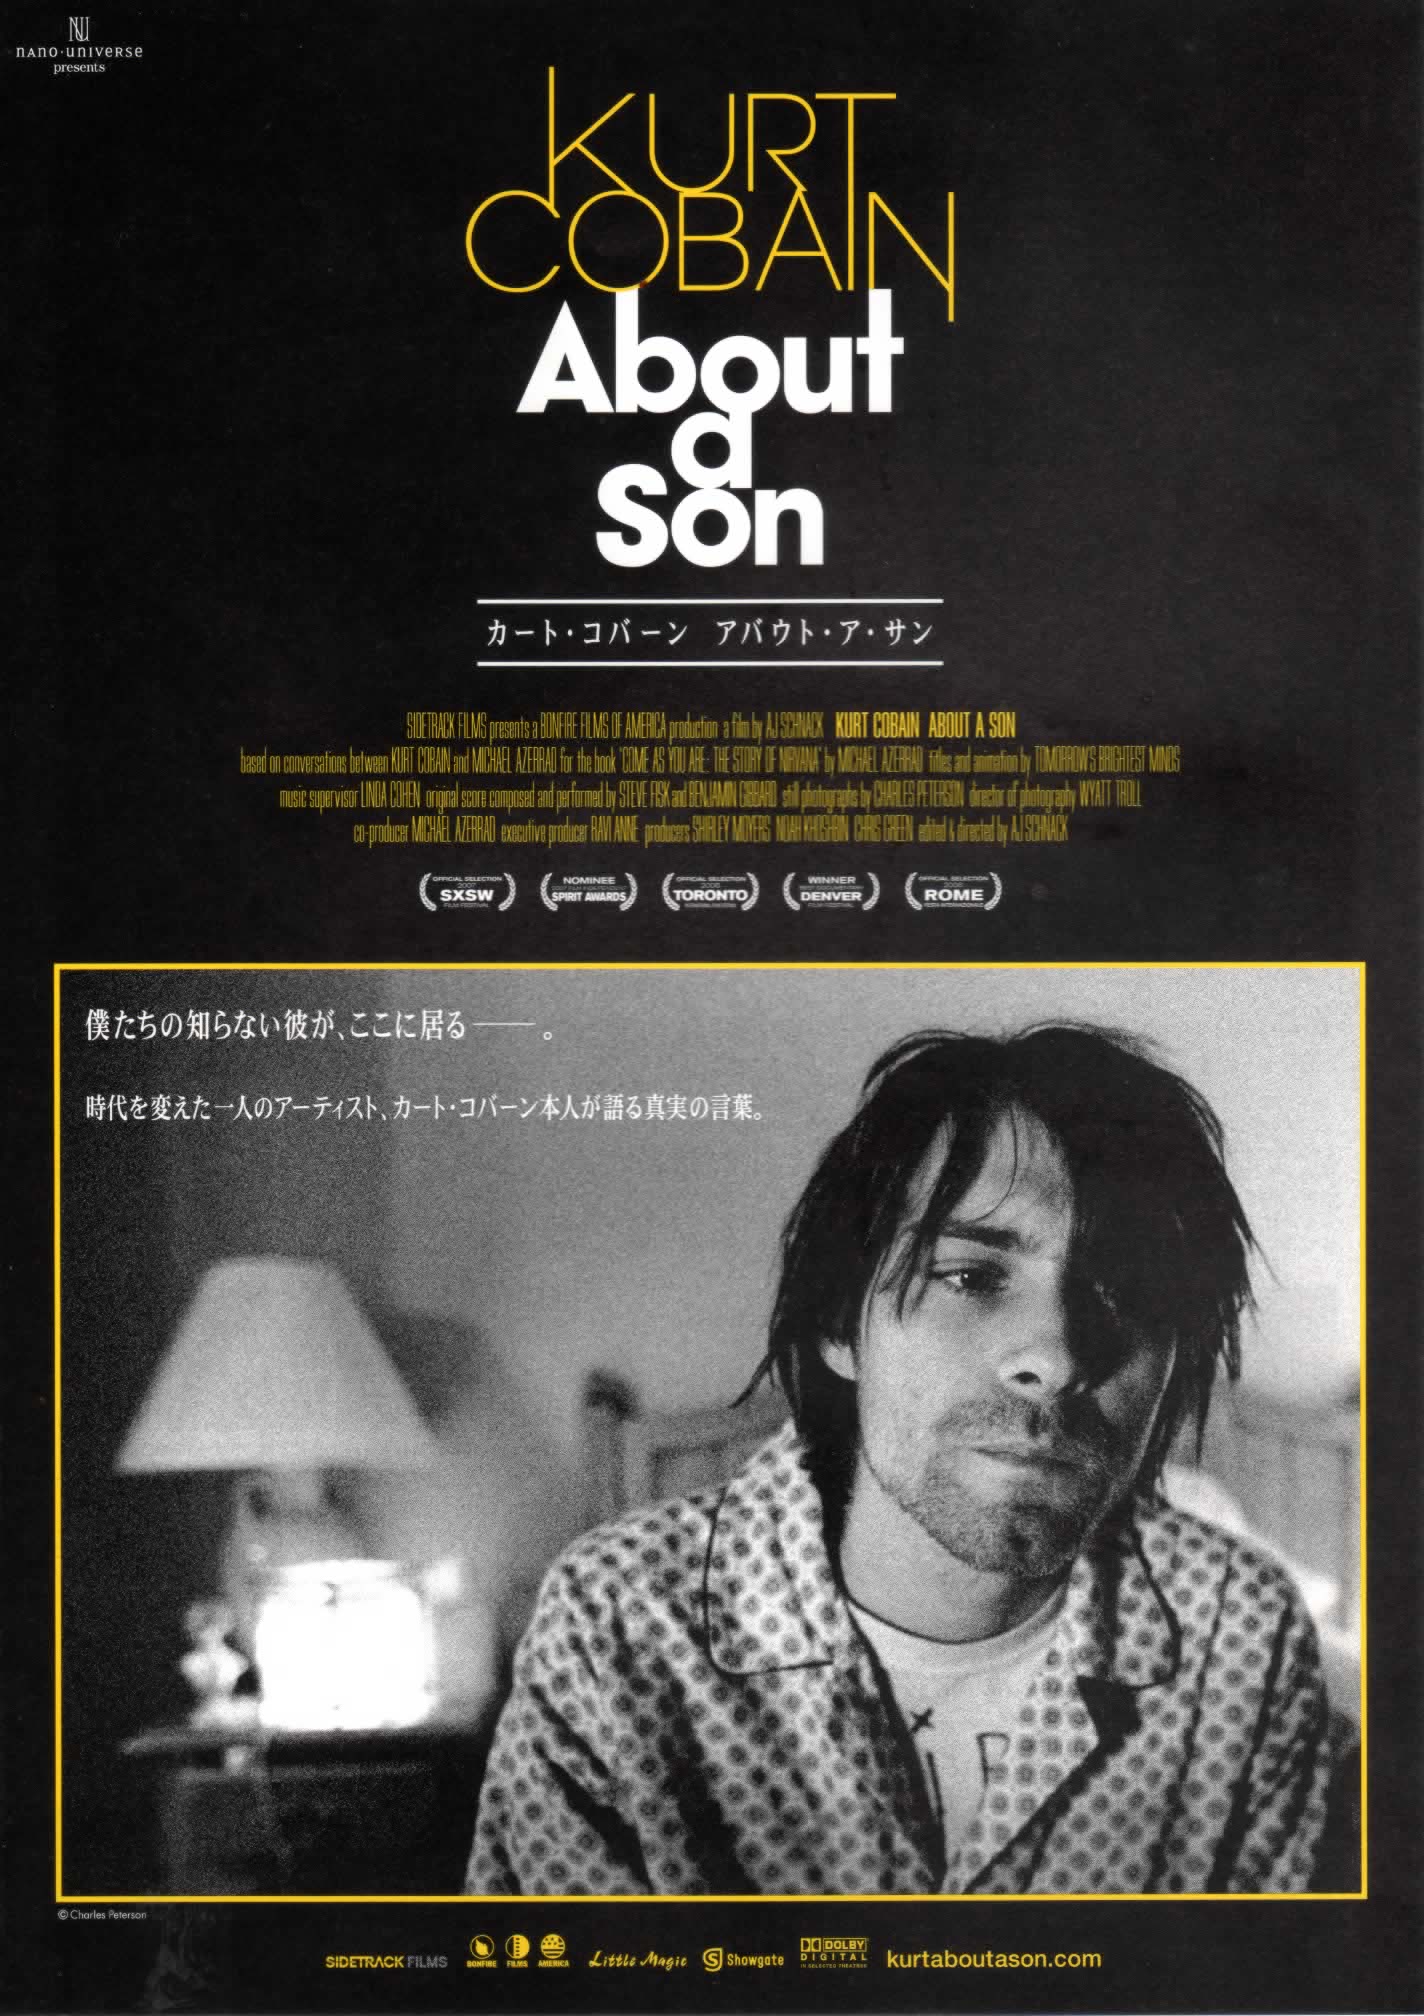 Kurt Cobain About a Son (2006) Screenshot 5